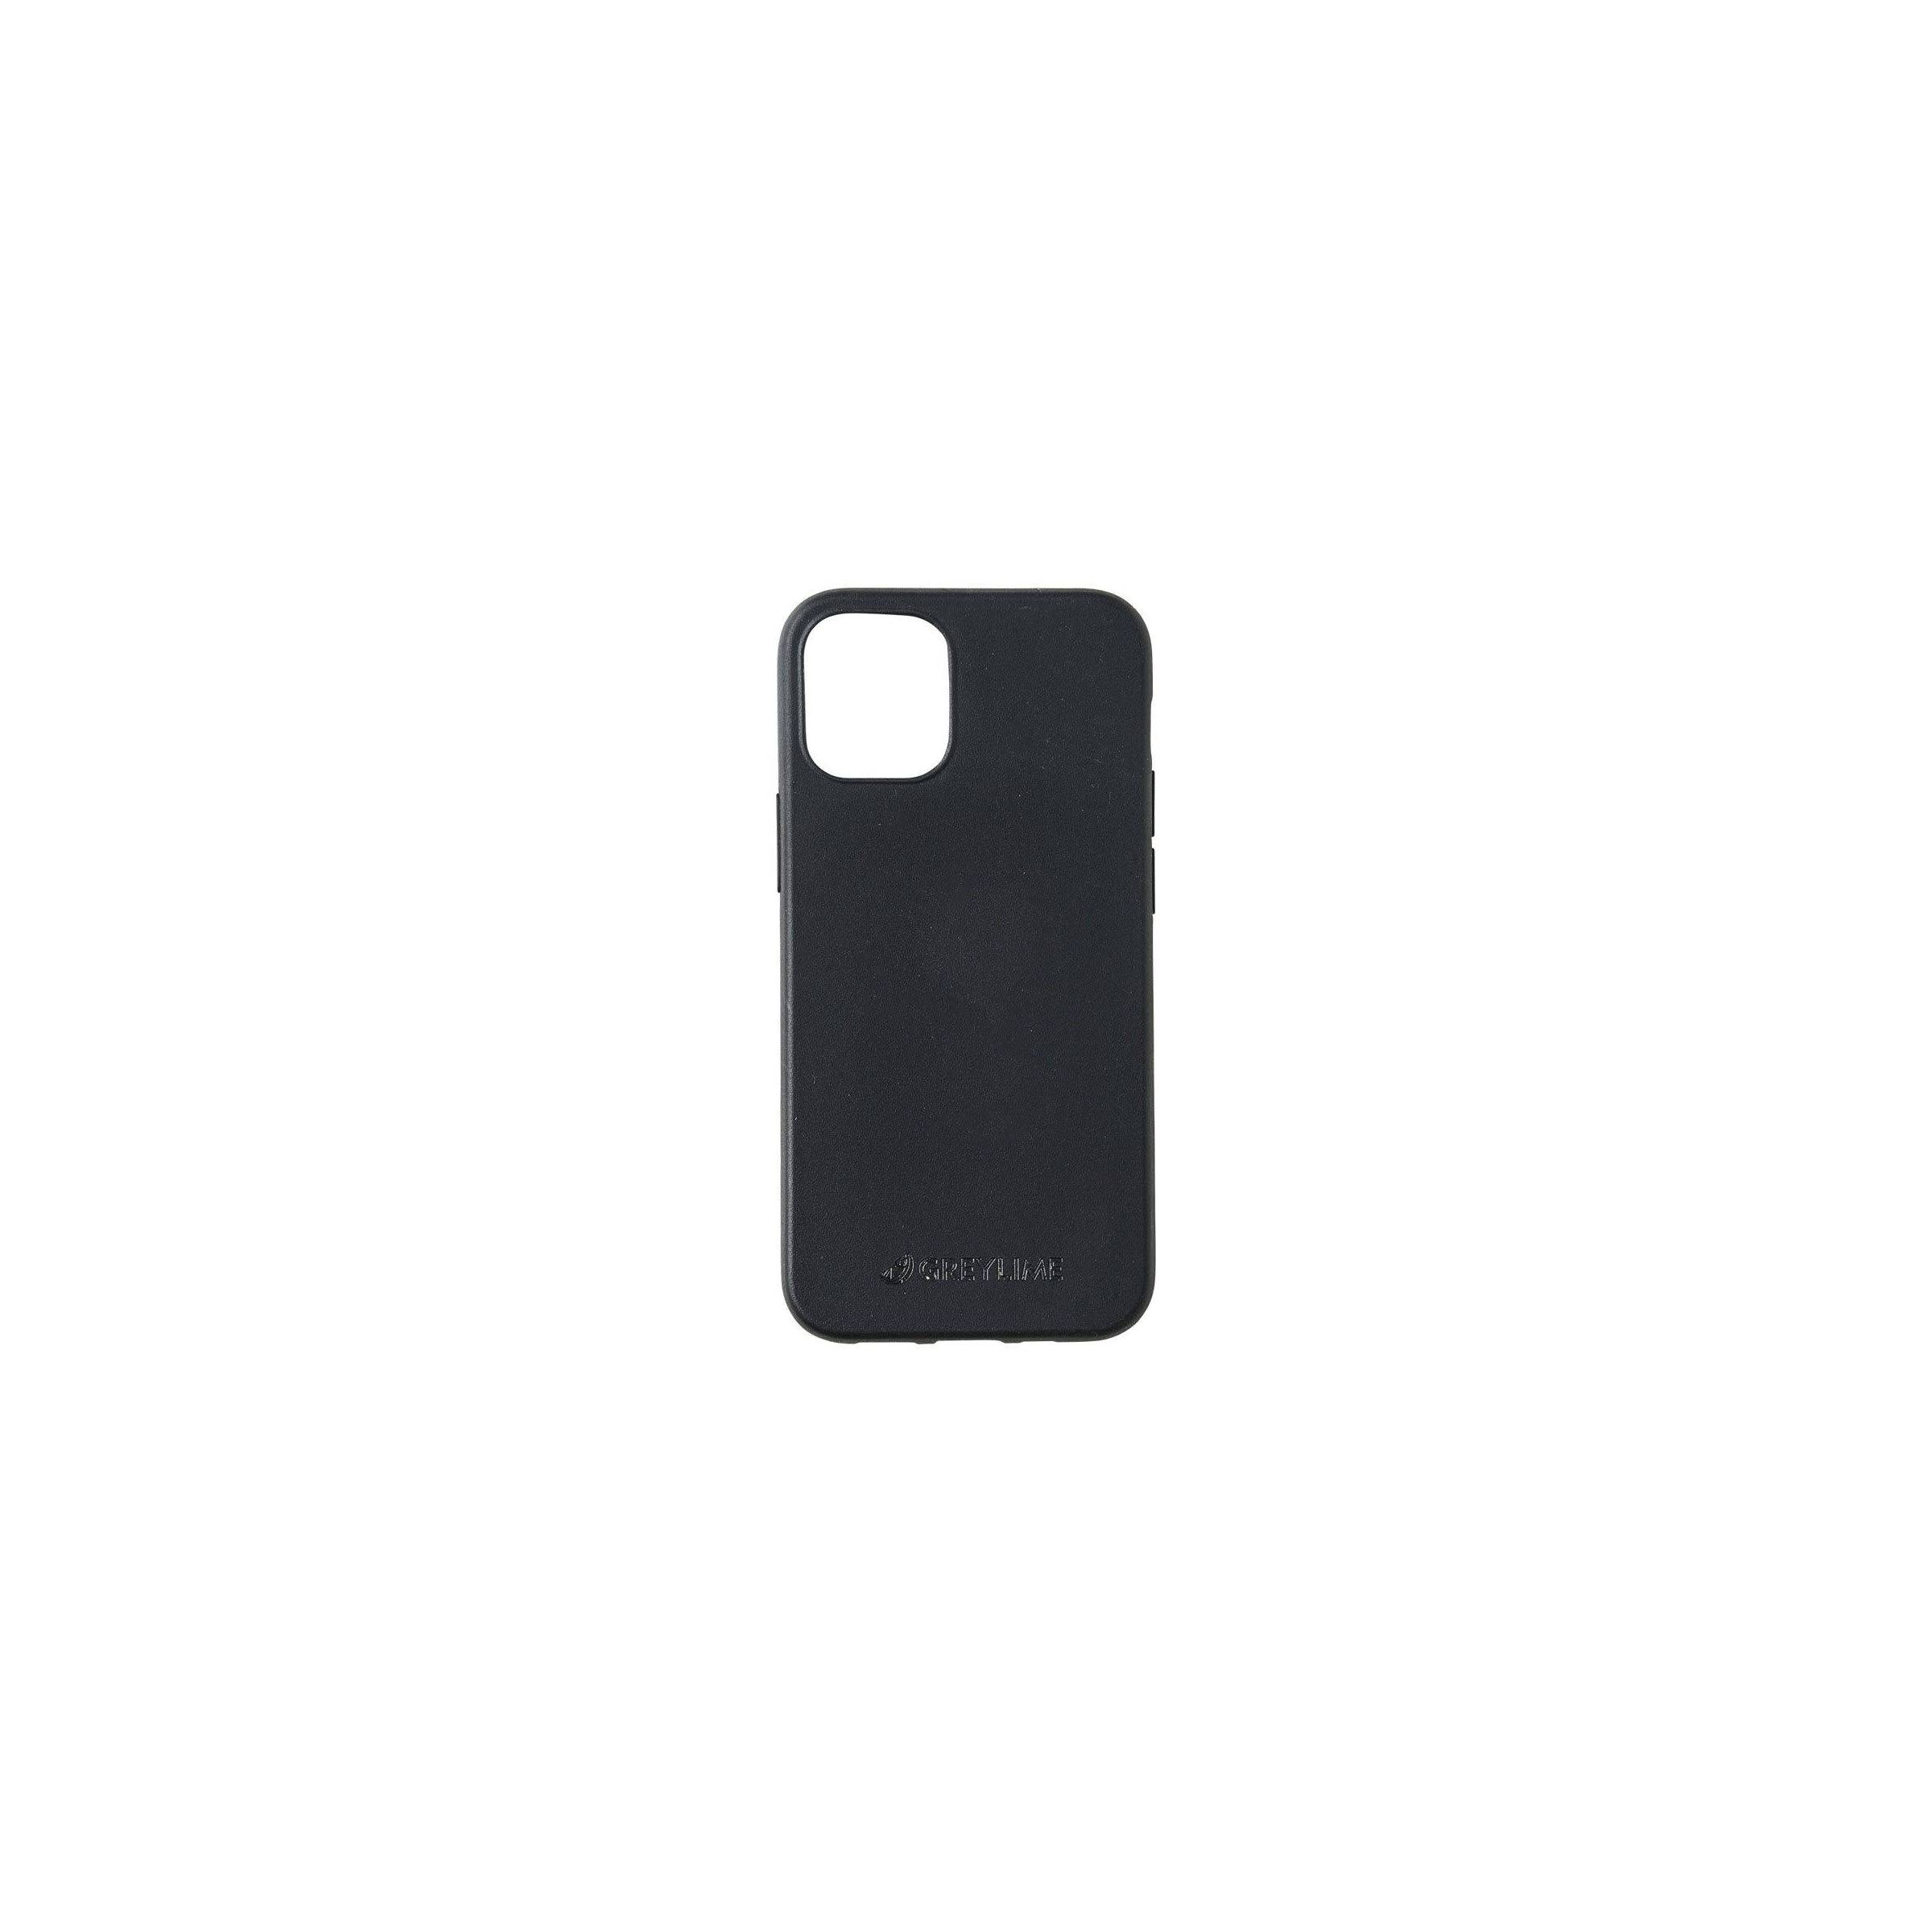 Bilde av Greylime Iphone 12 Mini Biodegradable Cover Black